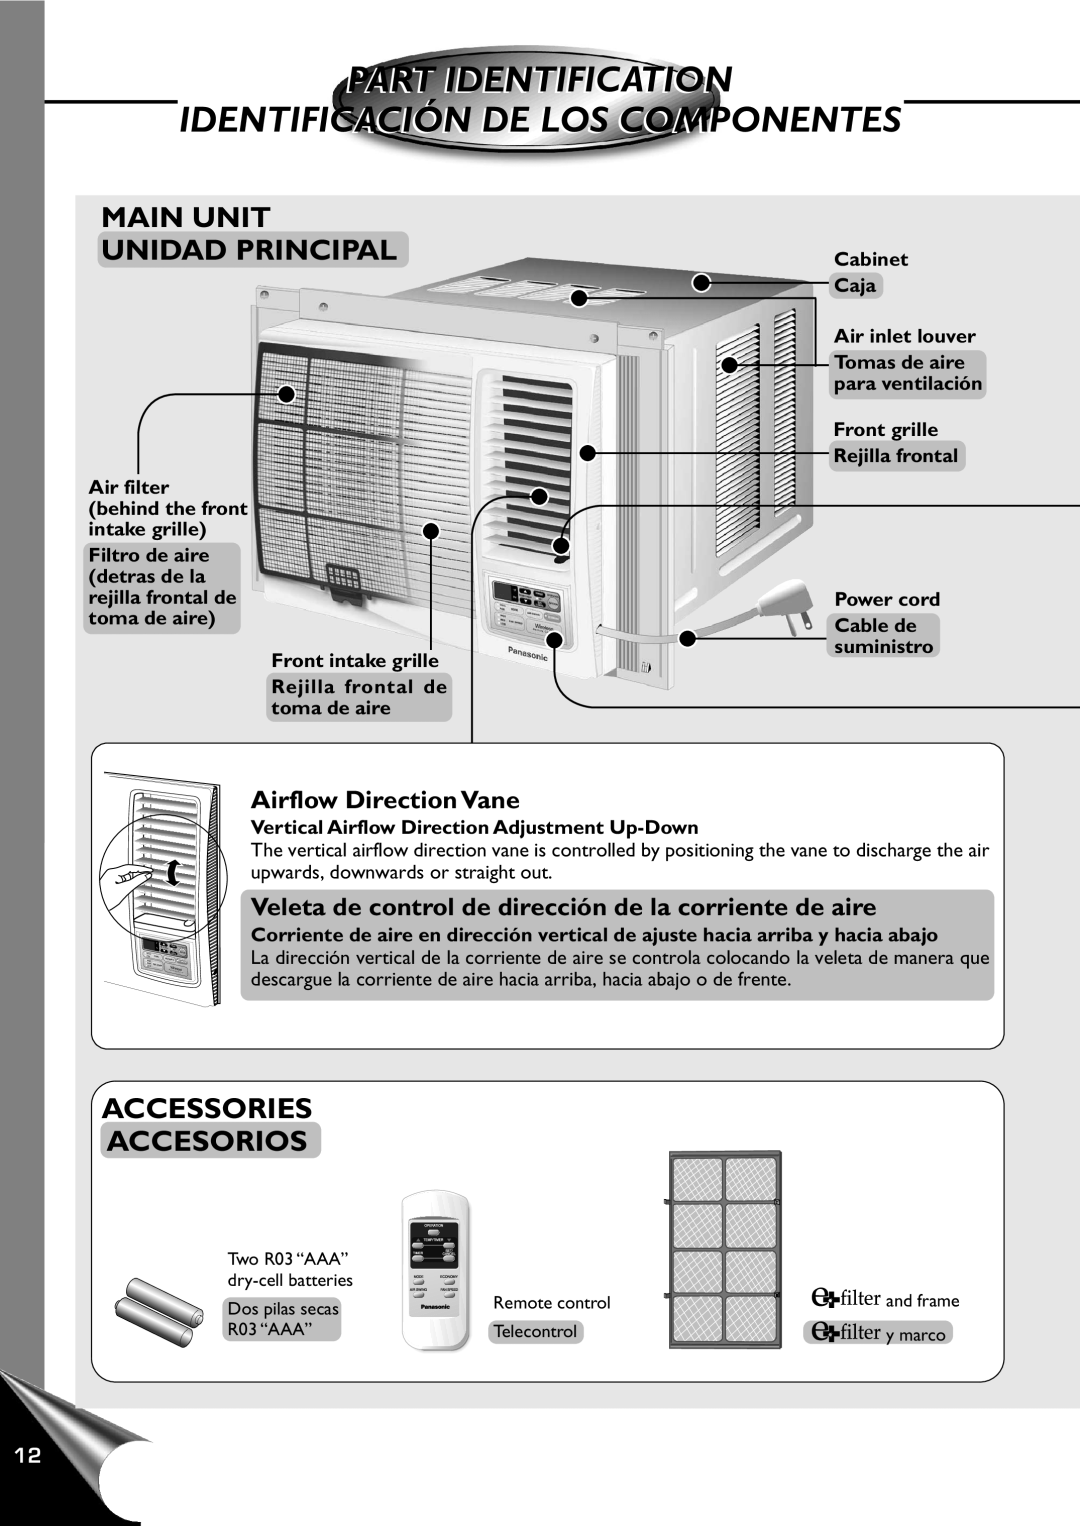 Panasonic CW-XC120AU, CW-XC100AU manual Part Identification, Identificación De Los Componentes, Main Unit Unidad Principal 